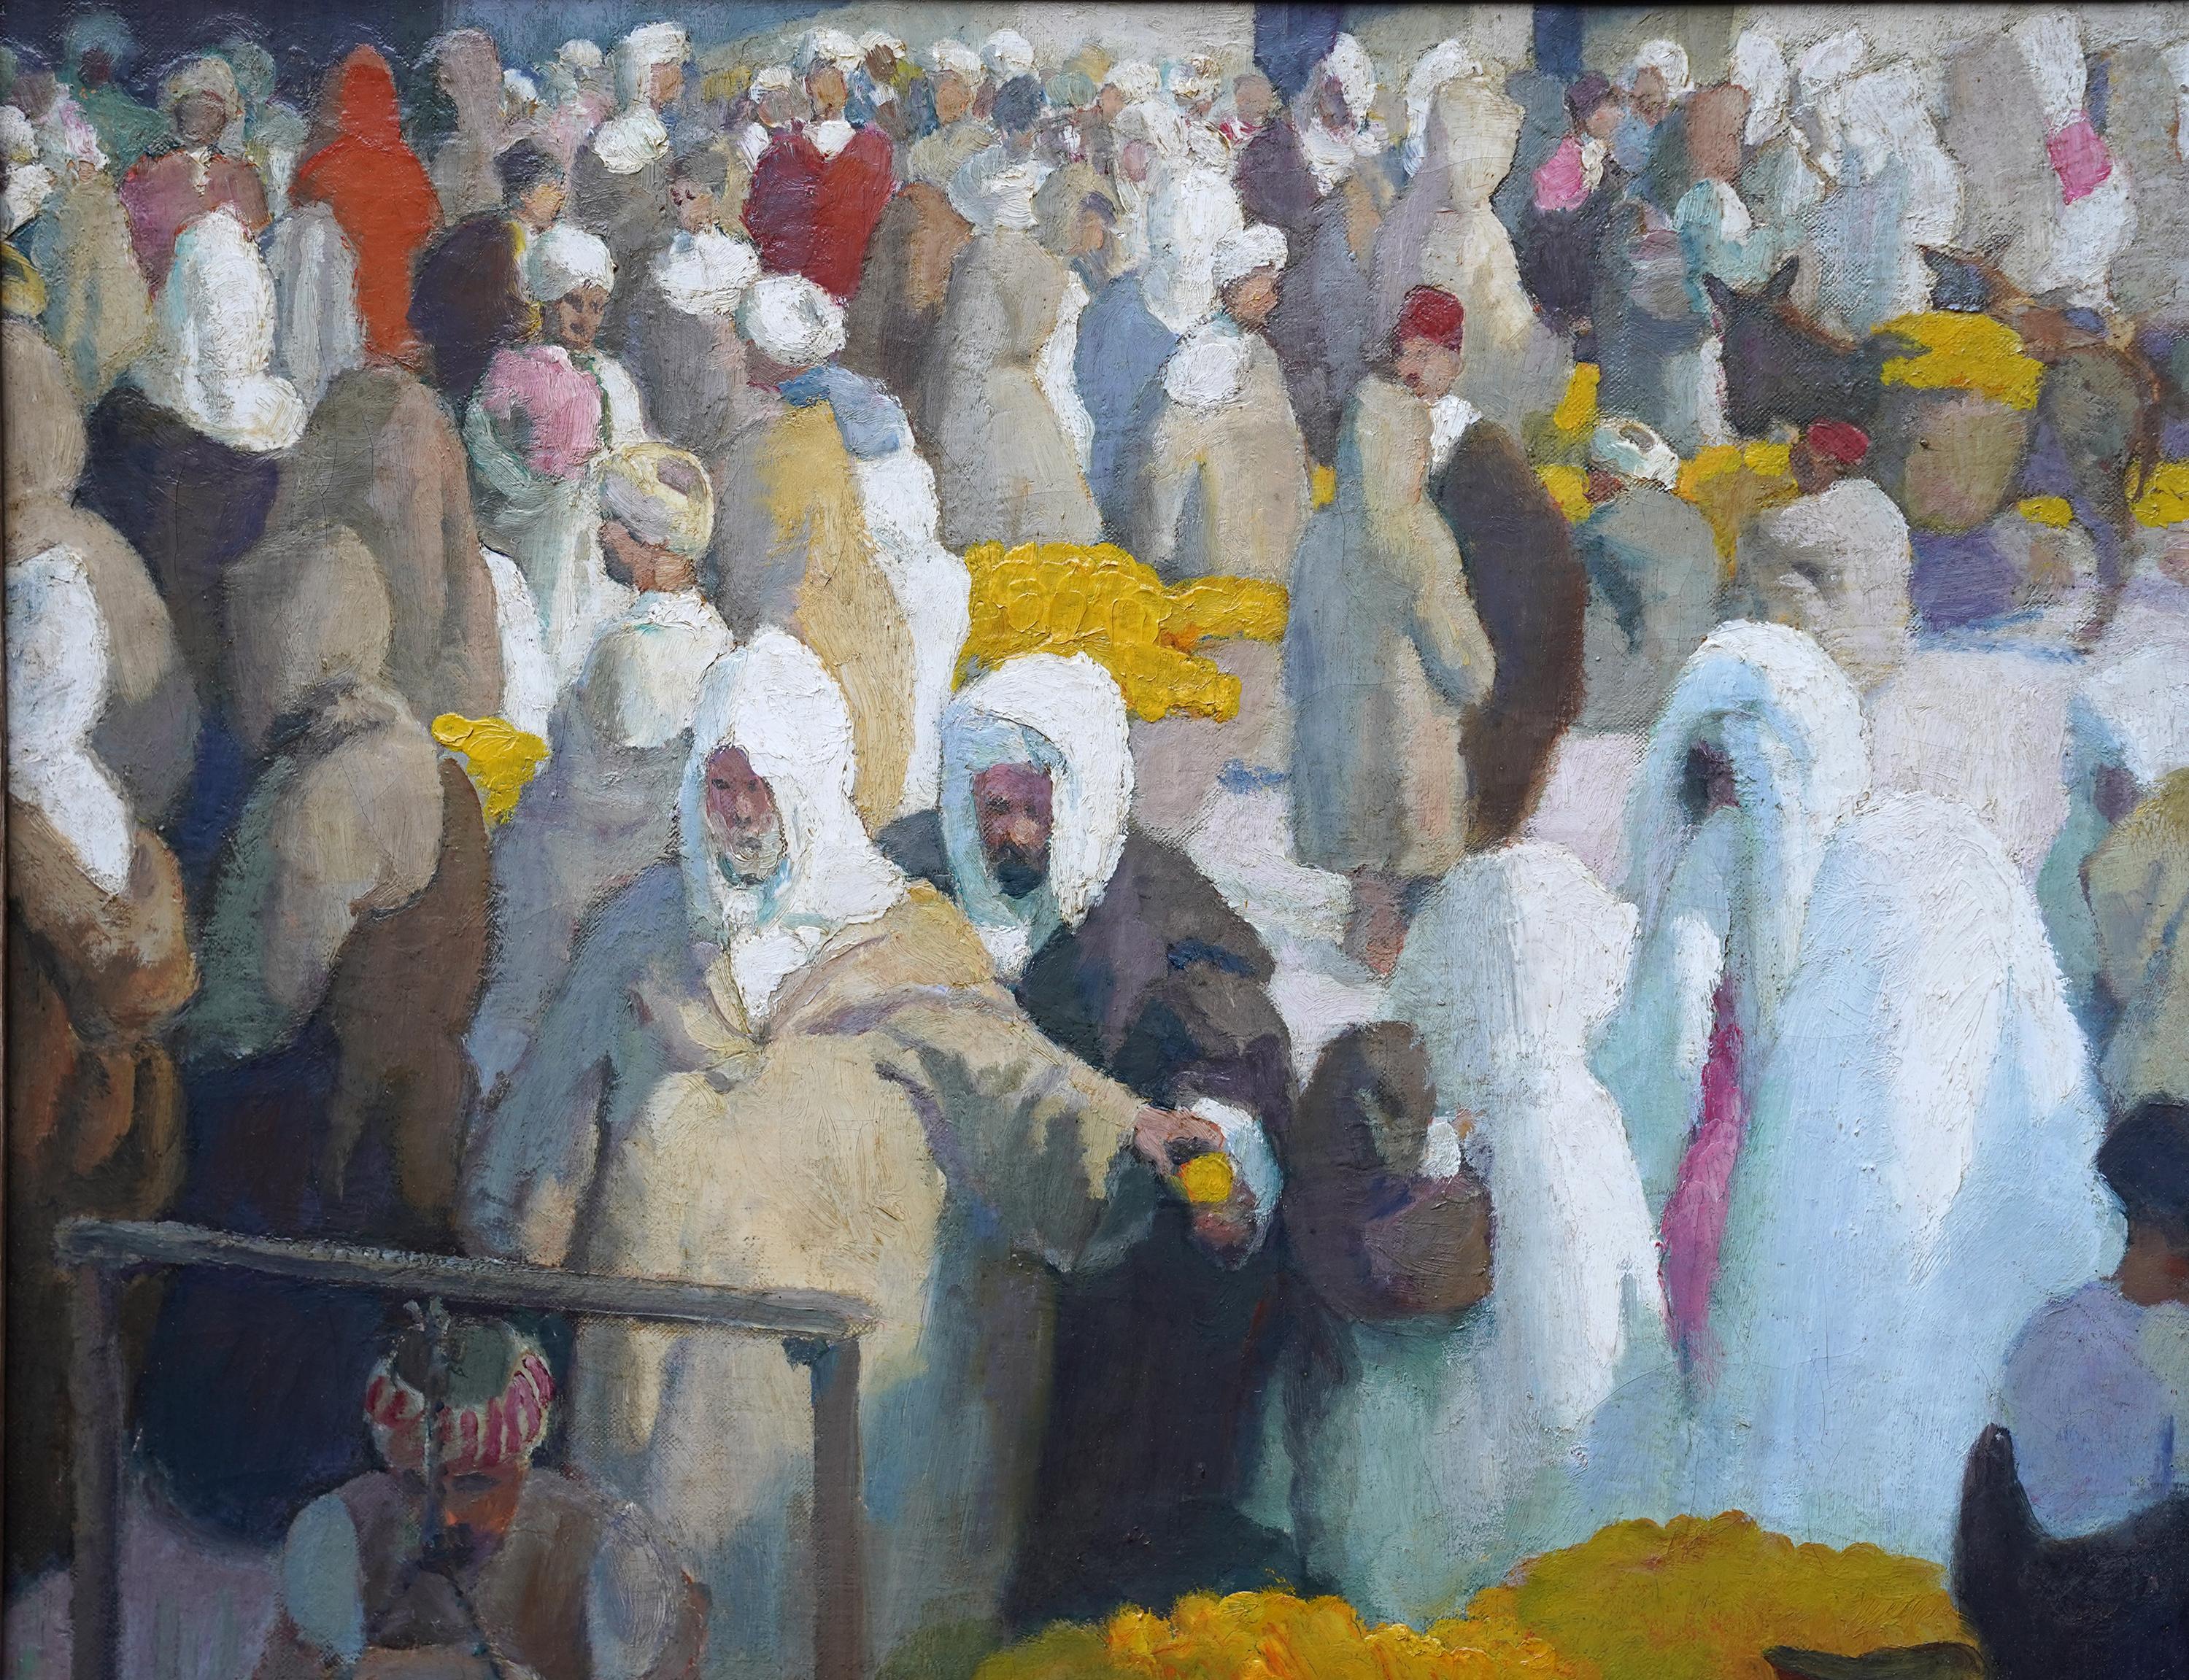 Tangiers Zitronenmarkt - Britisches orientalisches figurales Ölgemälde aus den 1920er Jahren  – Painting von Spencer Pryse